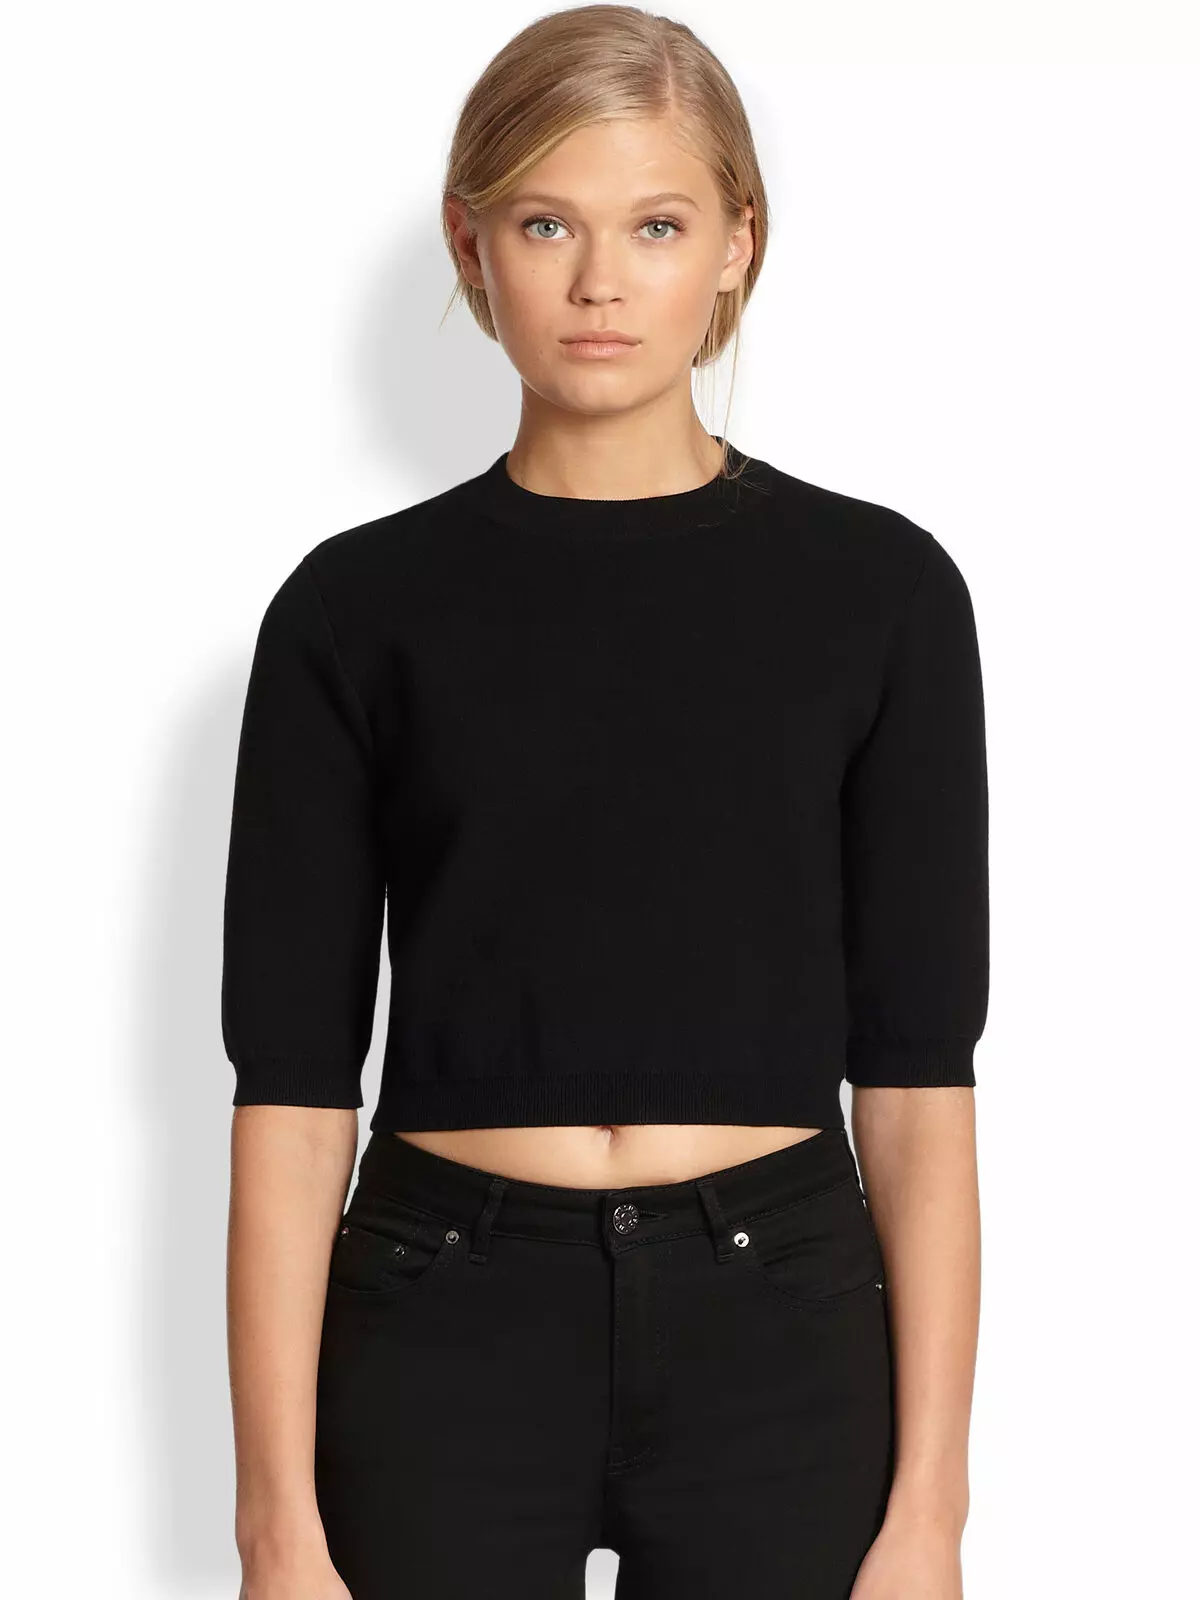 Przycięty sweter (129 zdjęć): Co nosić z długimi rękawami, czarnymi, modele 2021 1026_36